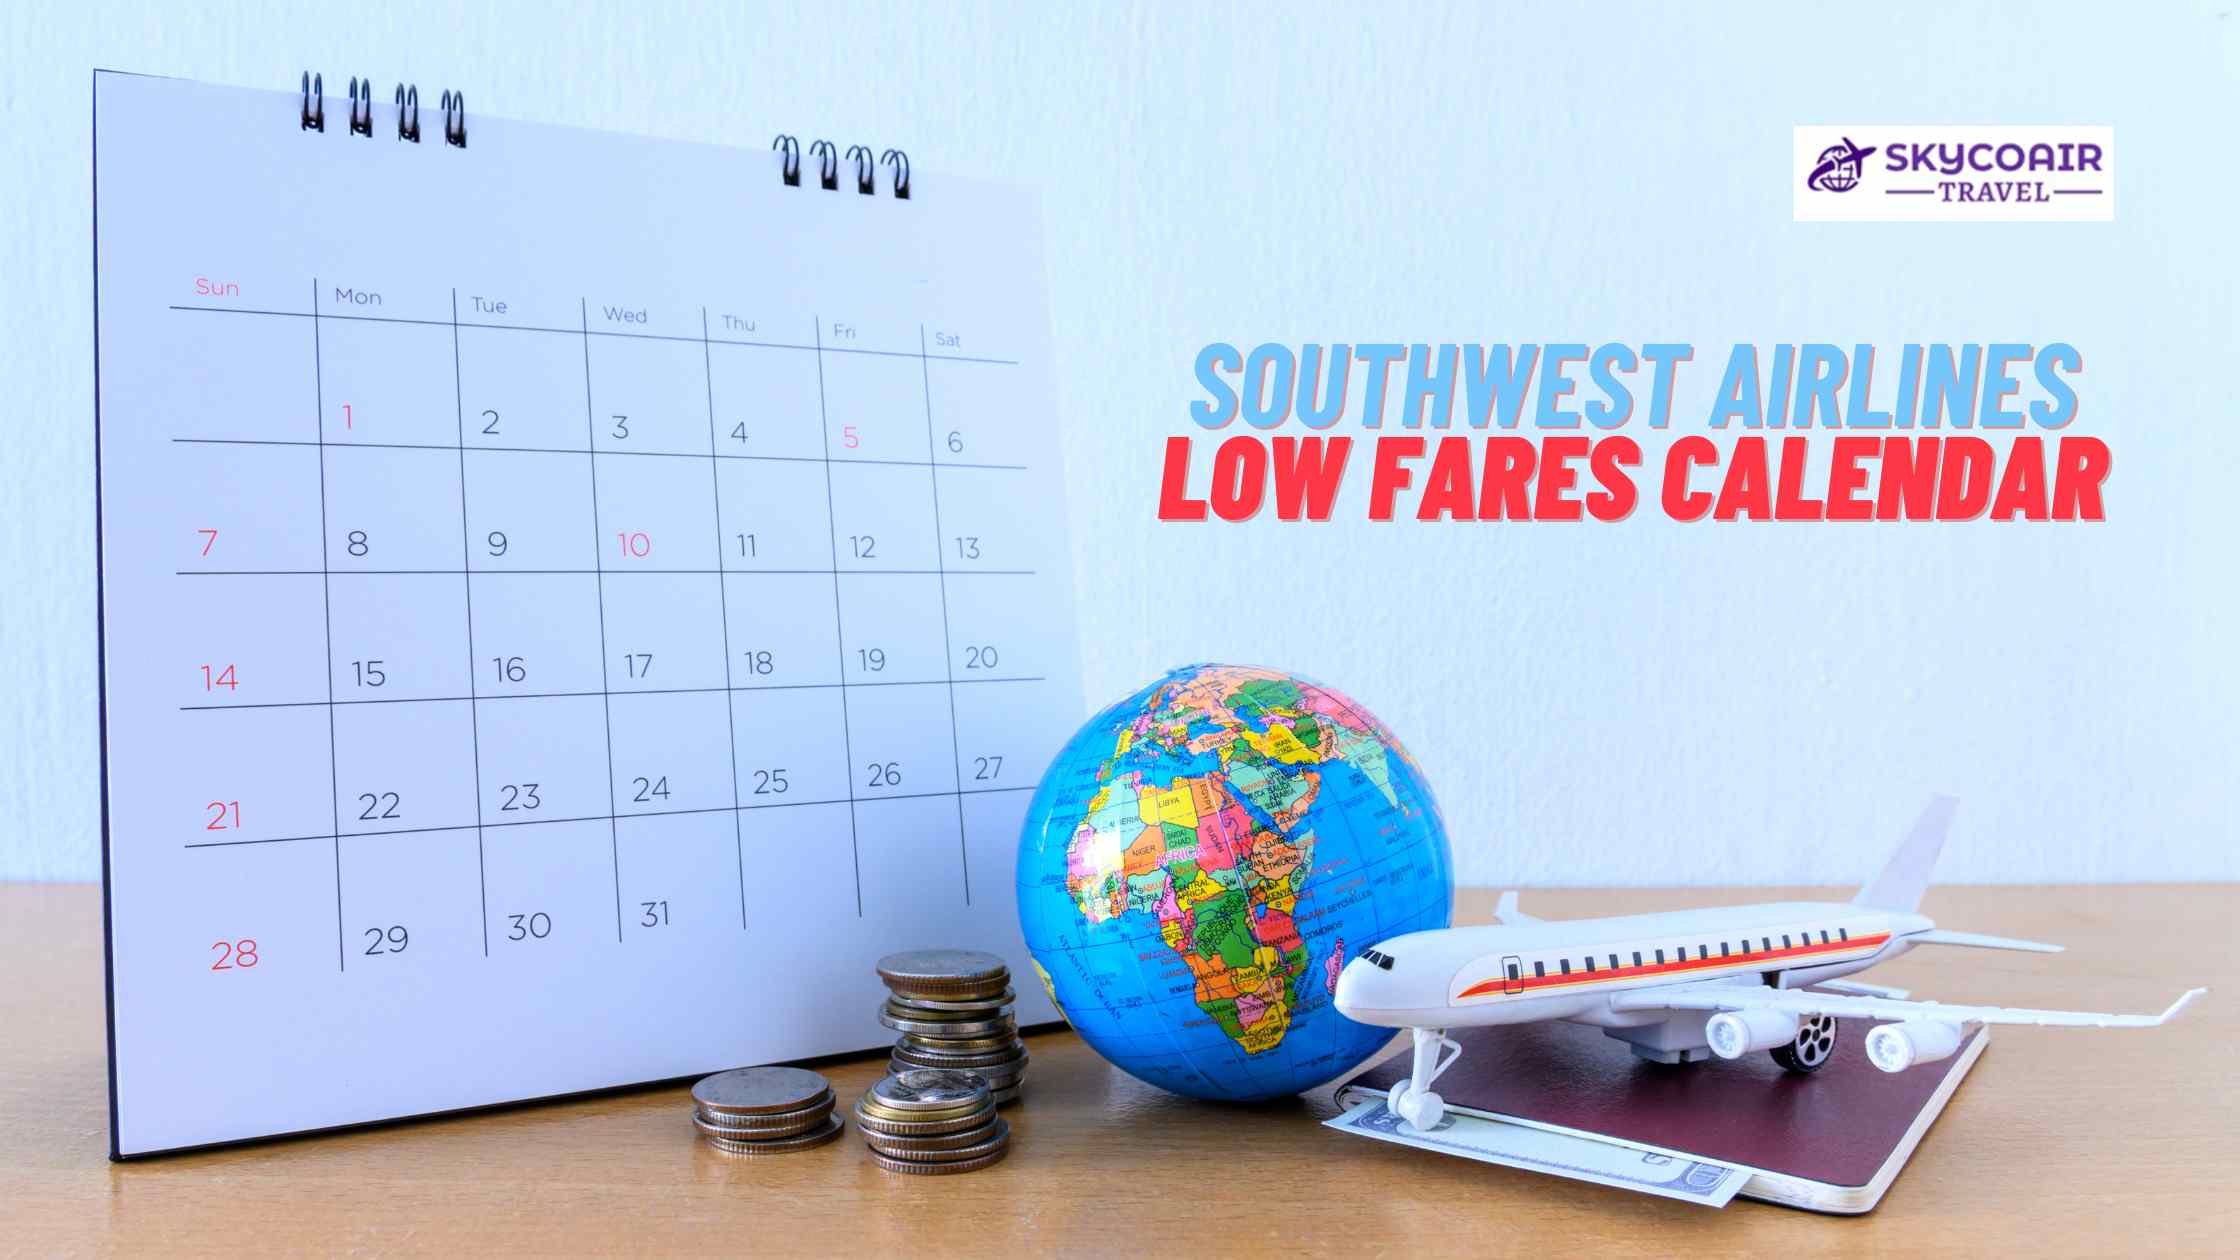 Southwest Airlines low fares calendar